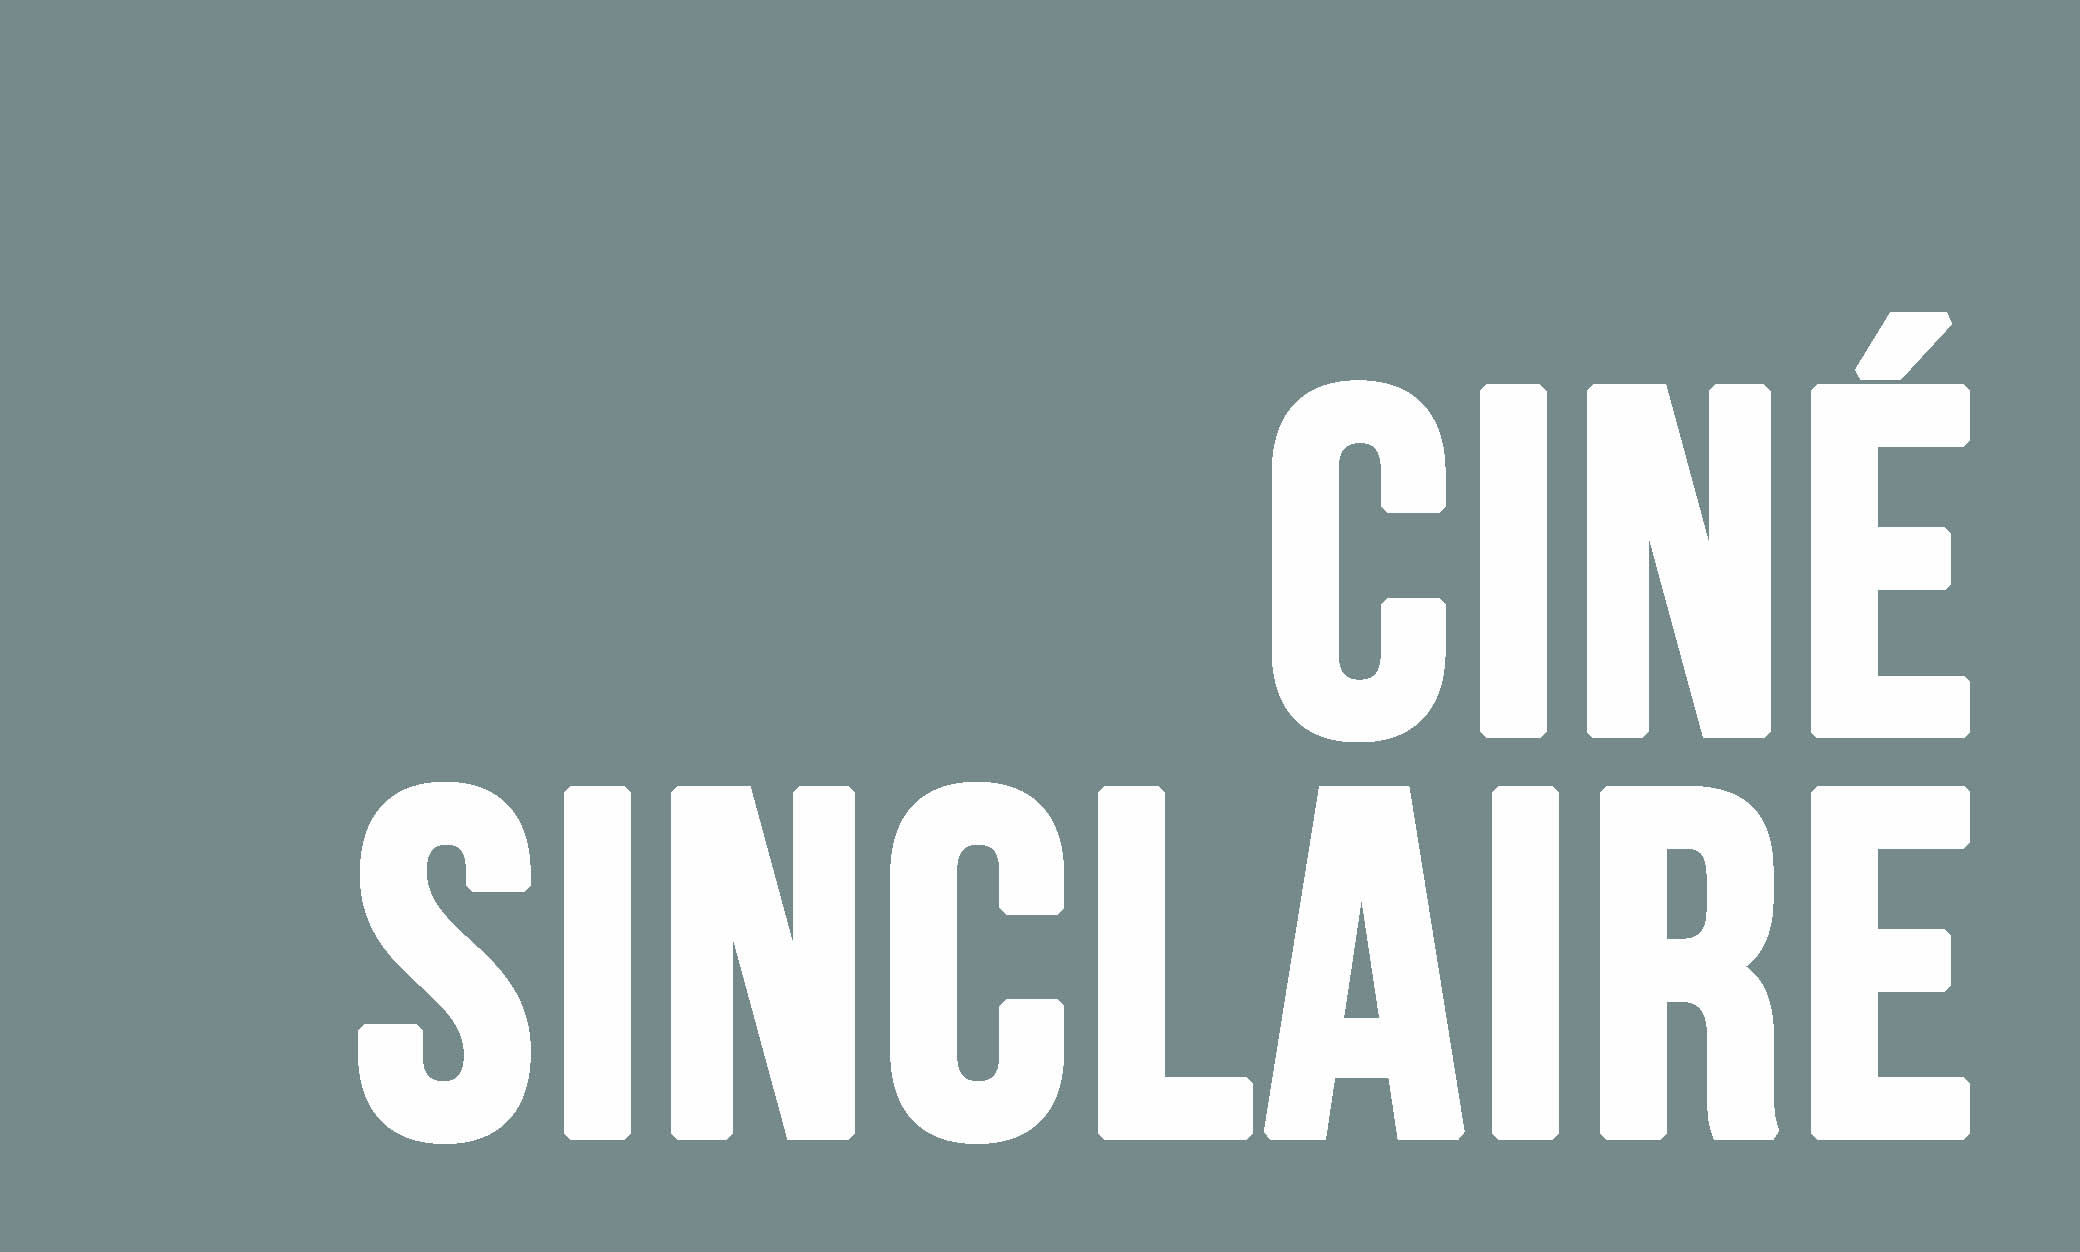 Ciné Sinclaire logo